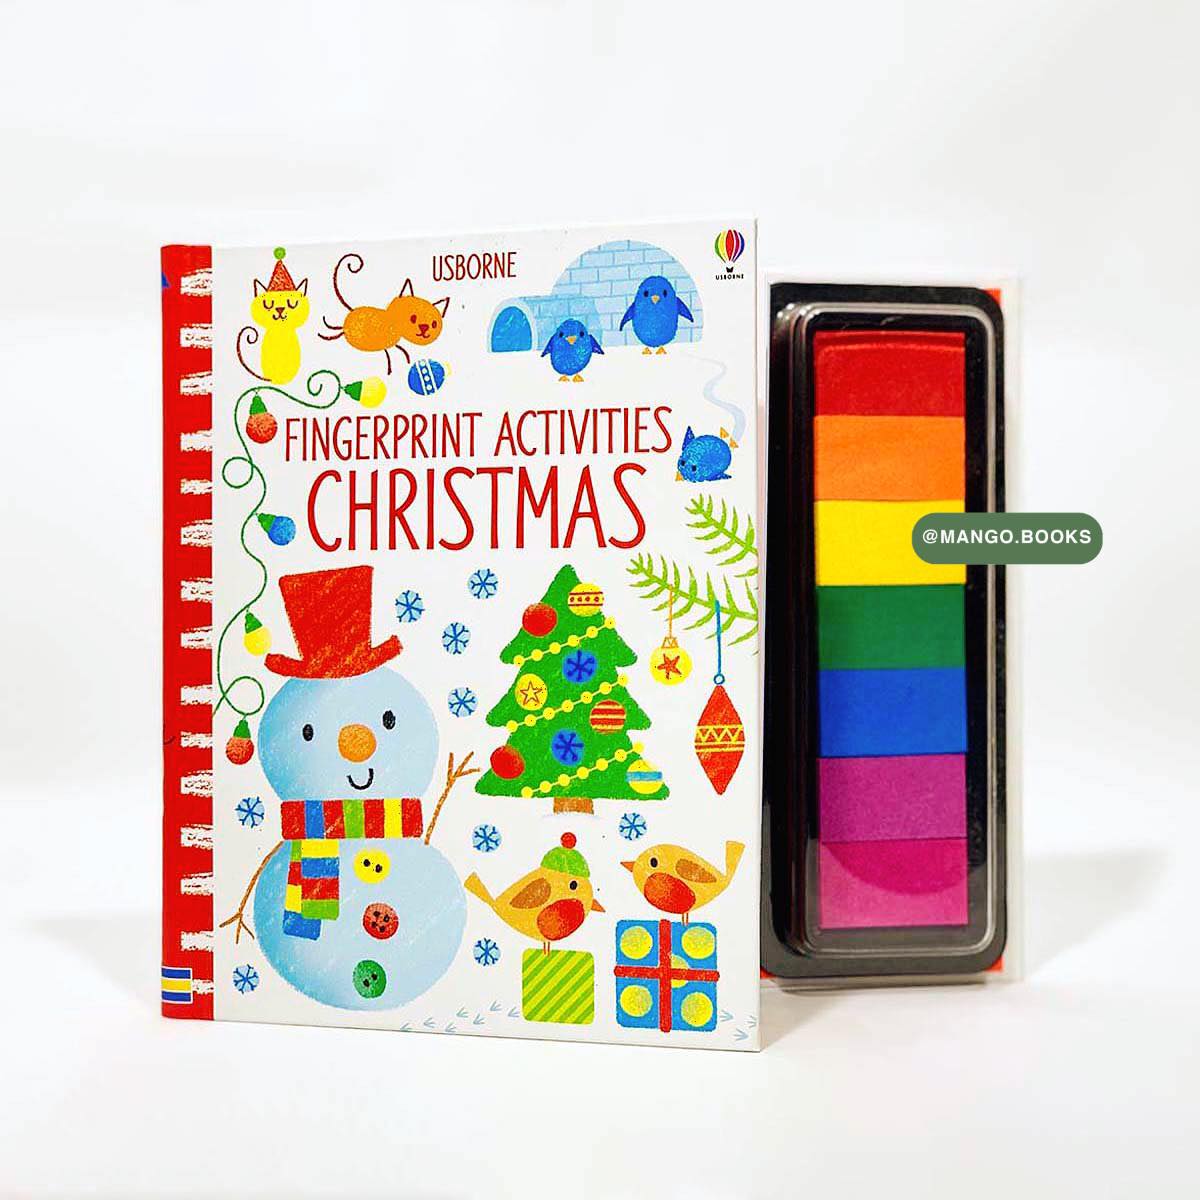 Sách Fingerprint Activities Christmas